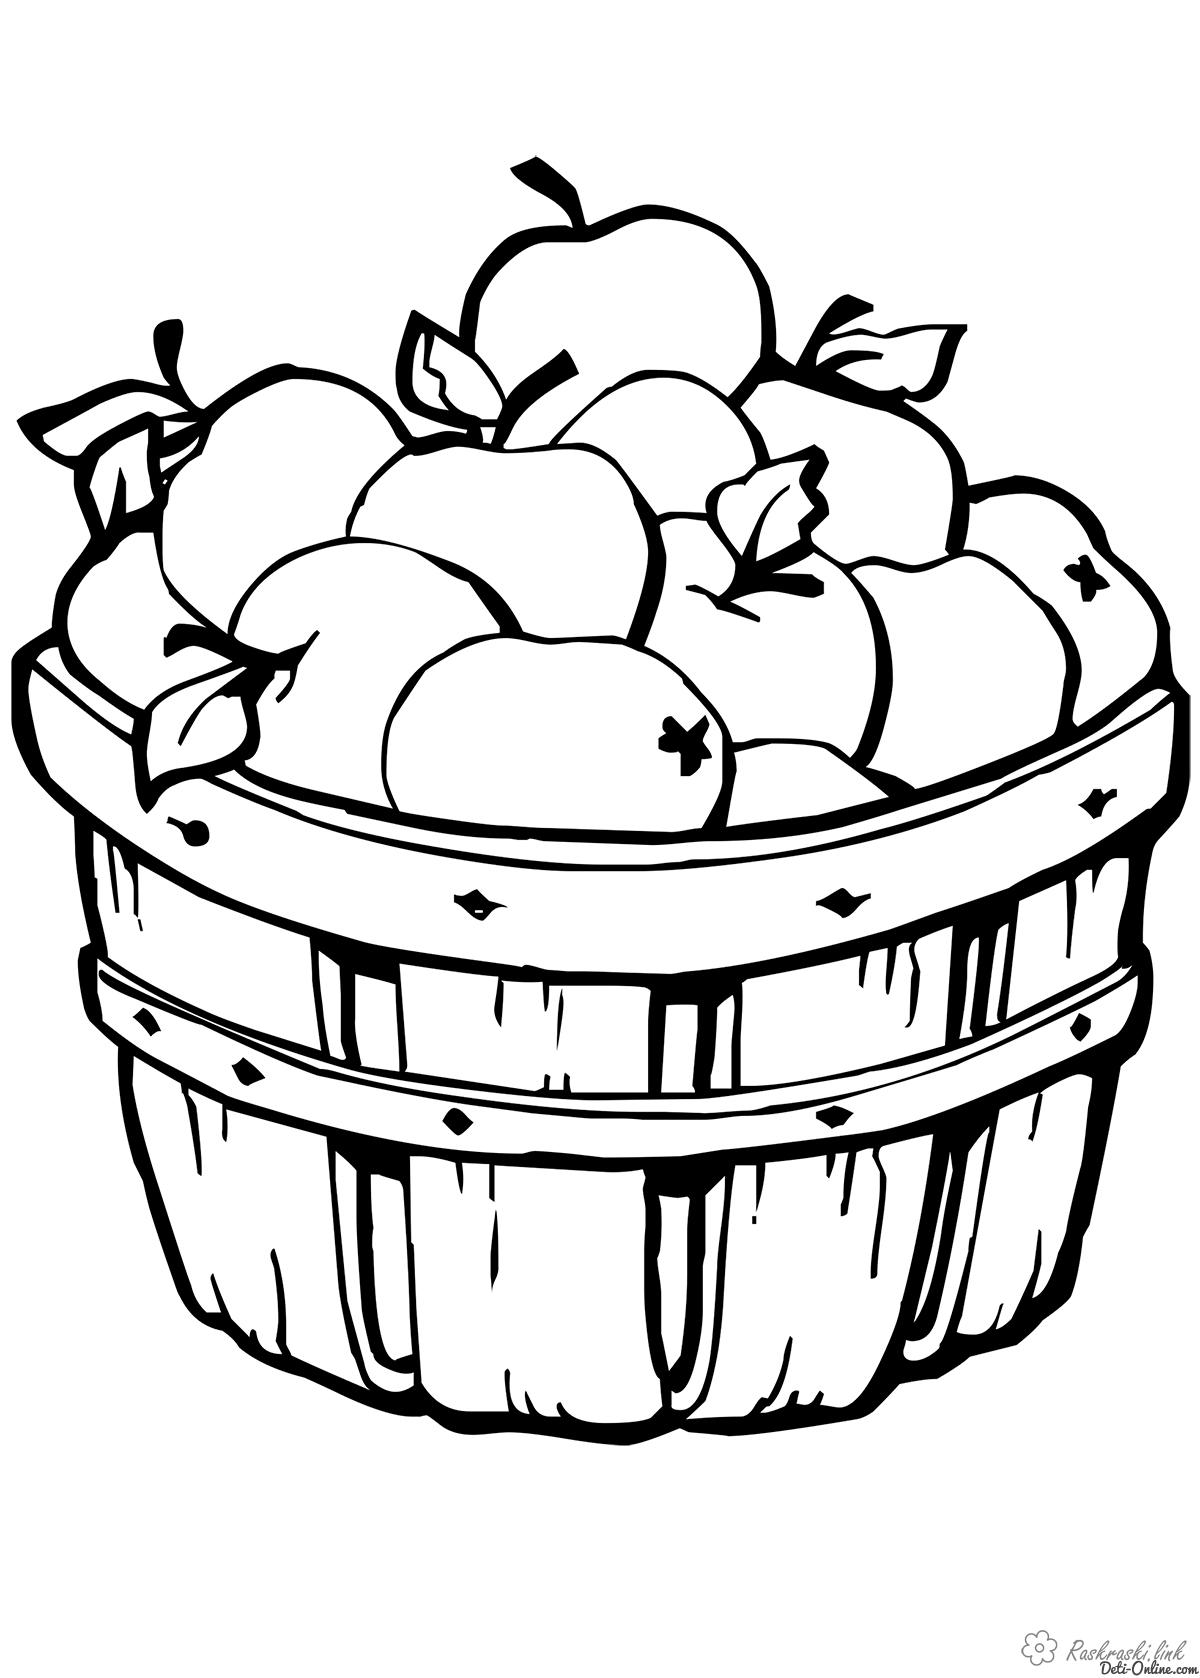 Раскраски Яблоки  Наливные, яблочки, большая, корзинка, детские раскраски